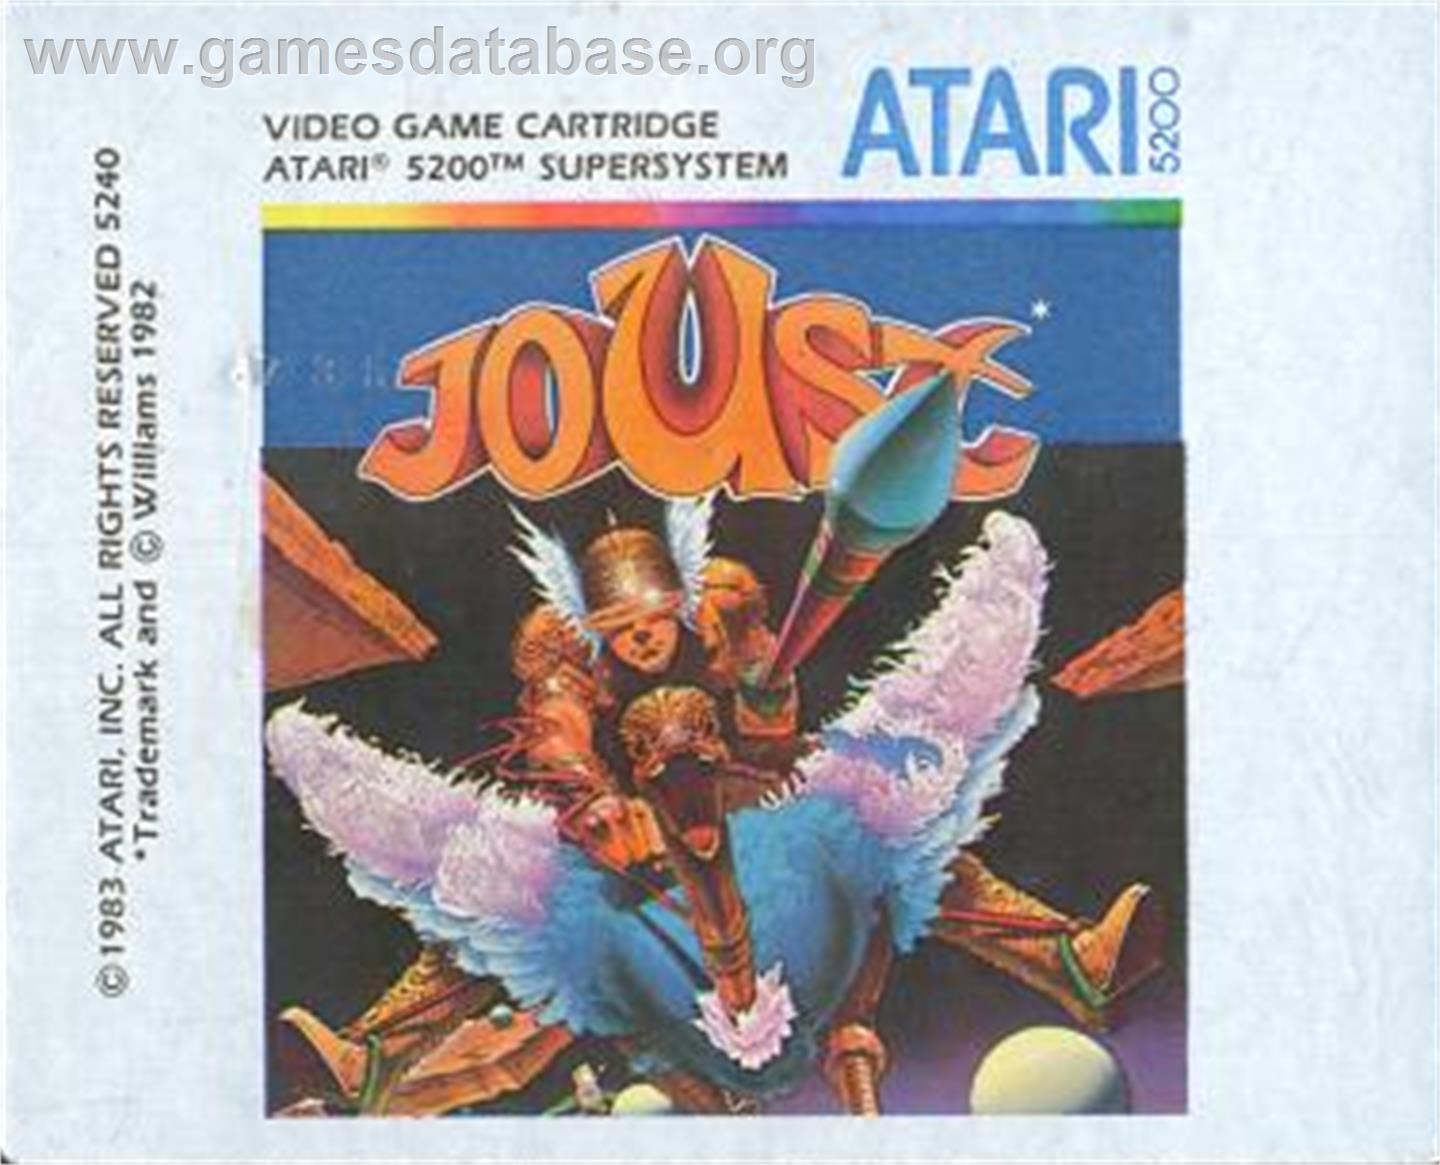 Joust - Atari 5200 - Artwork - Cartridge Top